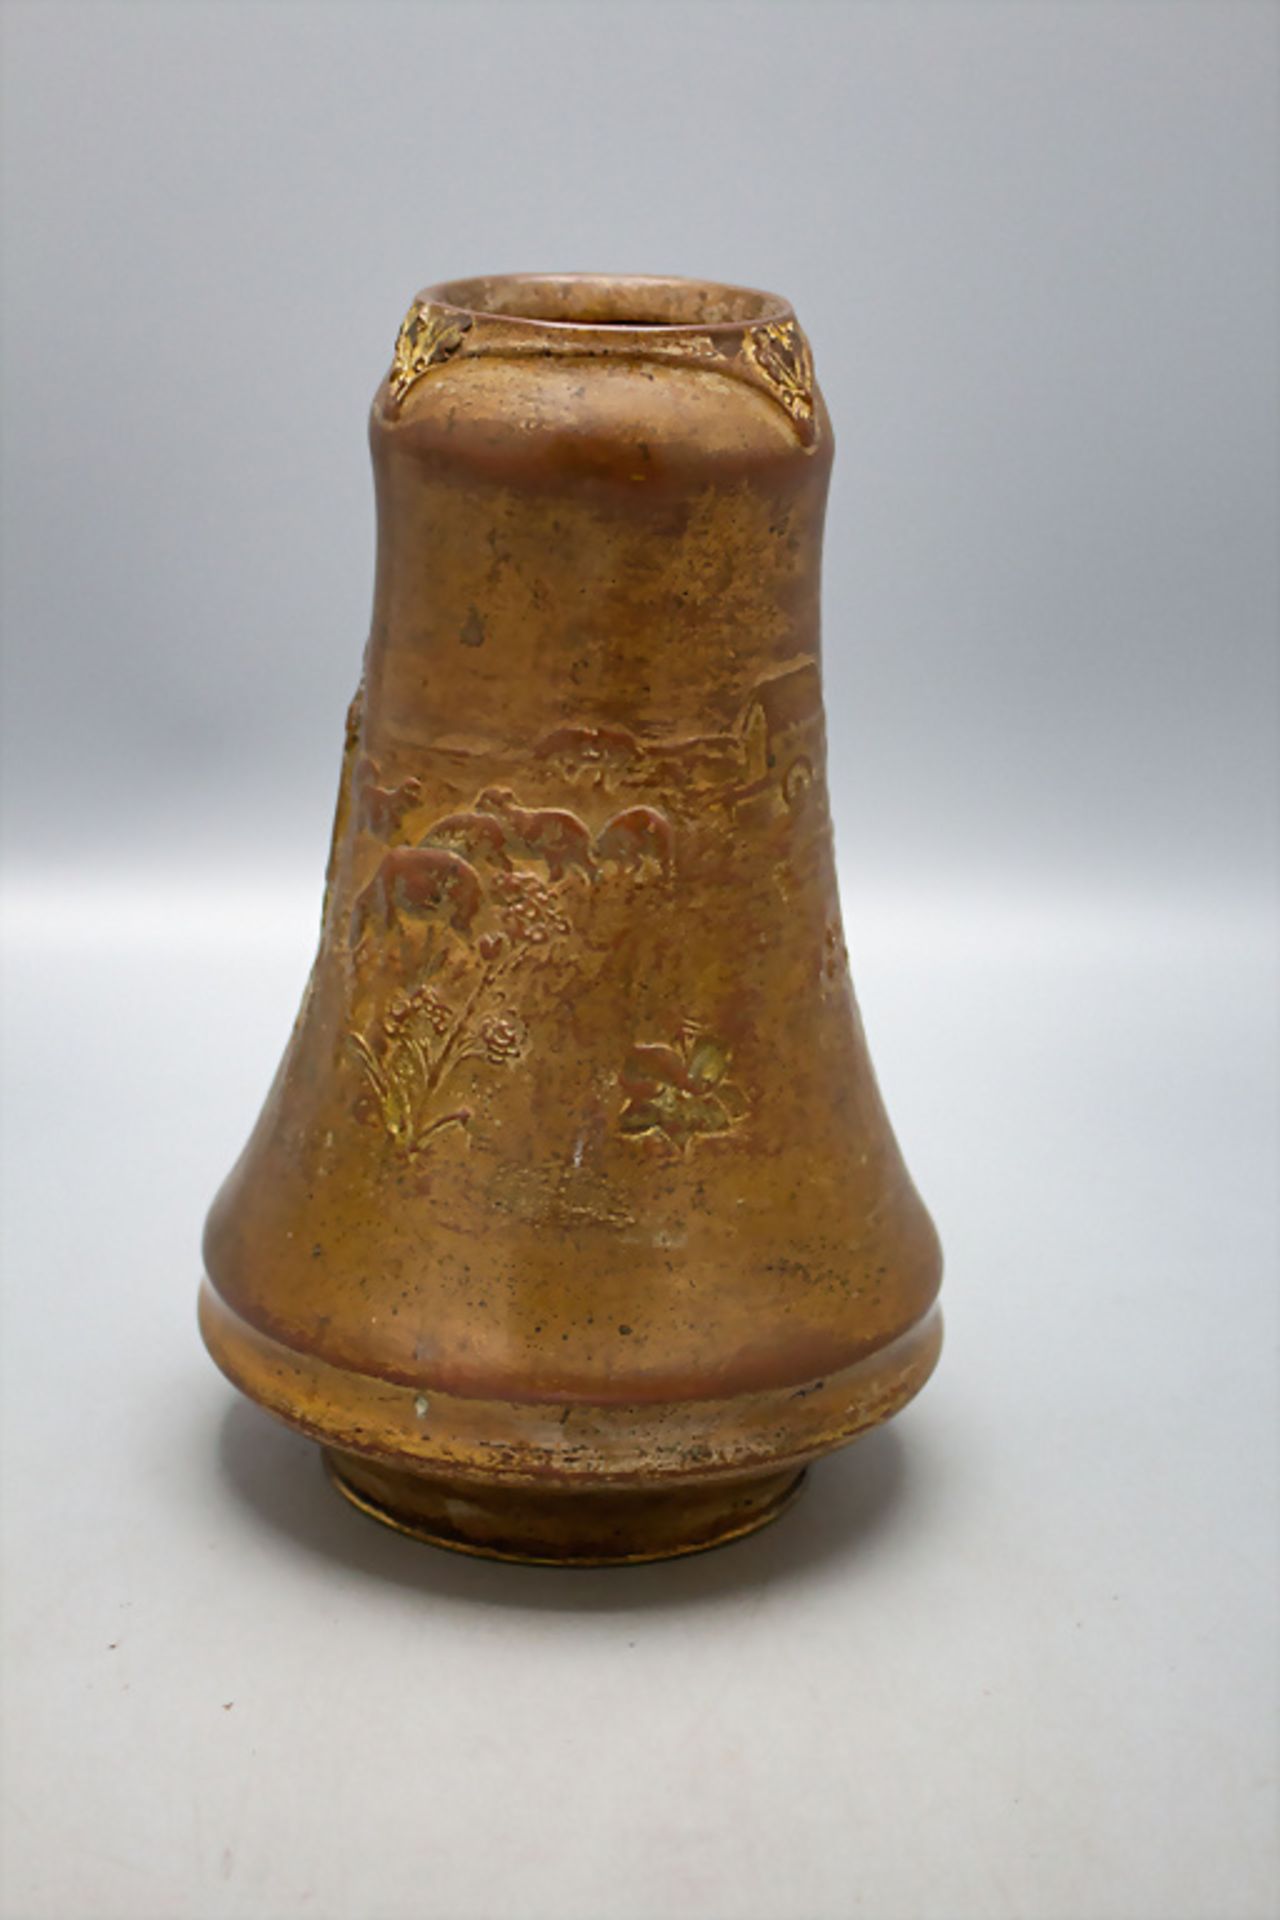 Charles KORSCHANN (1872-1942), Jugendstil Bronze Vase / An Art Nouveau bronze vase, um 1900 - Image 2 of 5